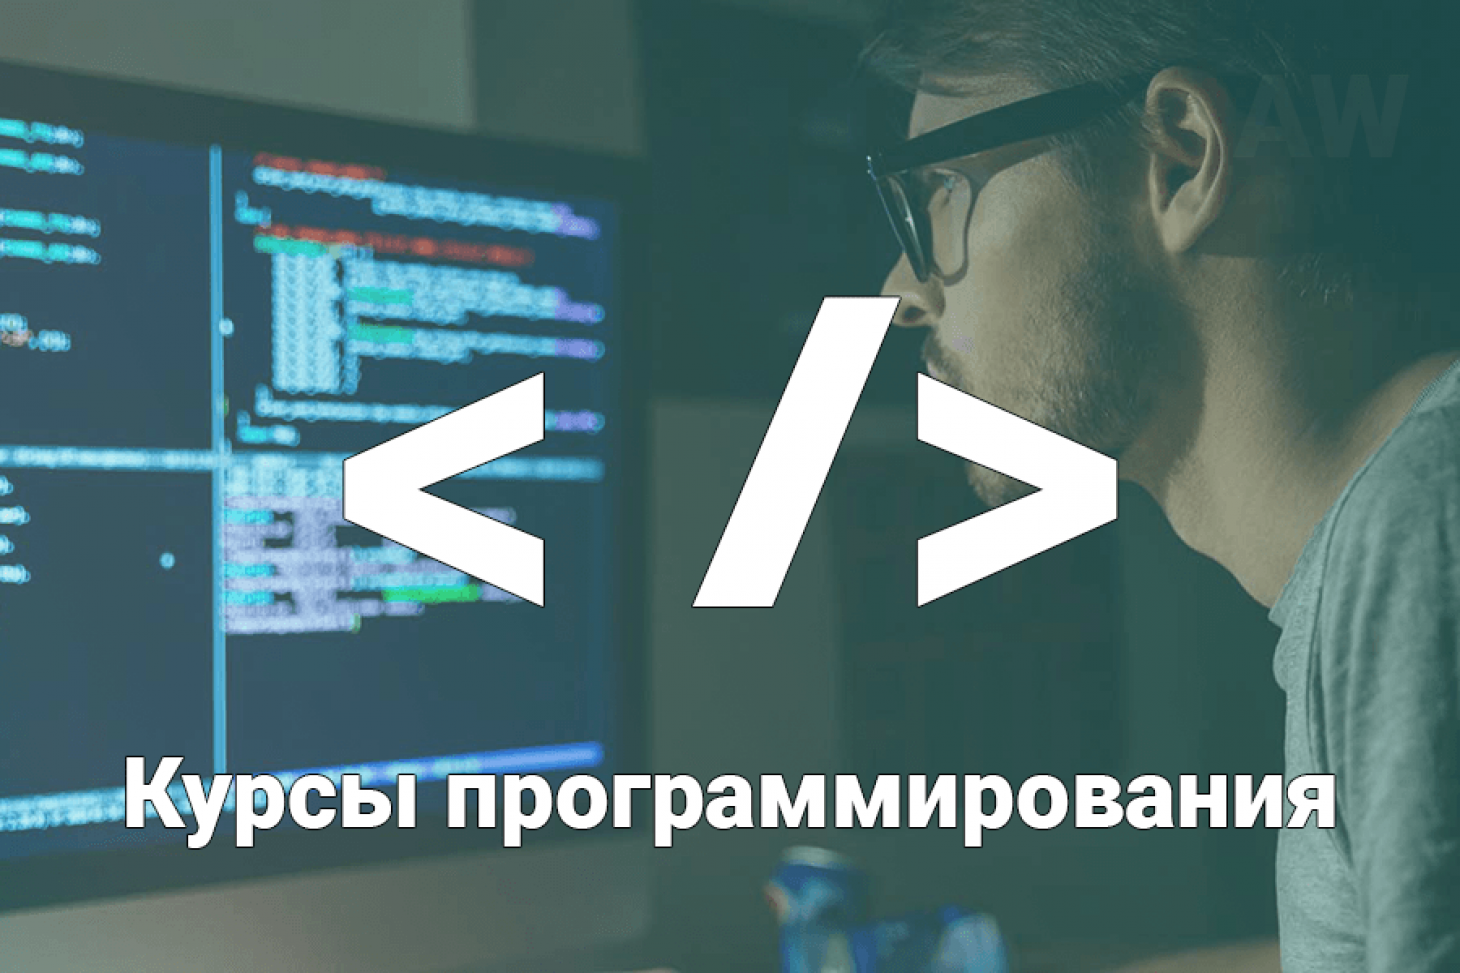 Бесплатный курс программирования dpo edu sigma ru. Курсы программирования. Курсы по программированию. Курсы по веб программированию. Курсы программиста.